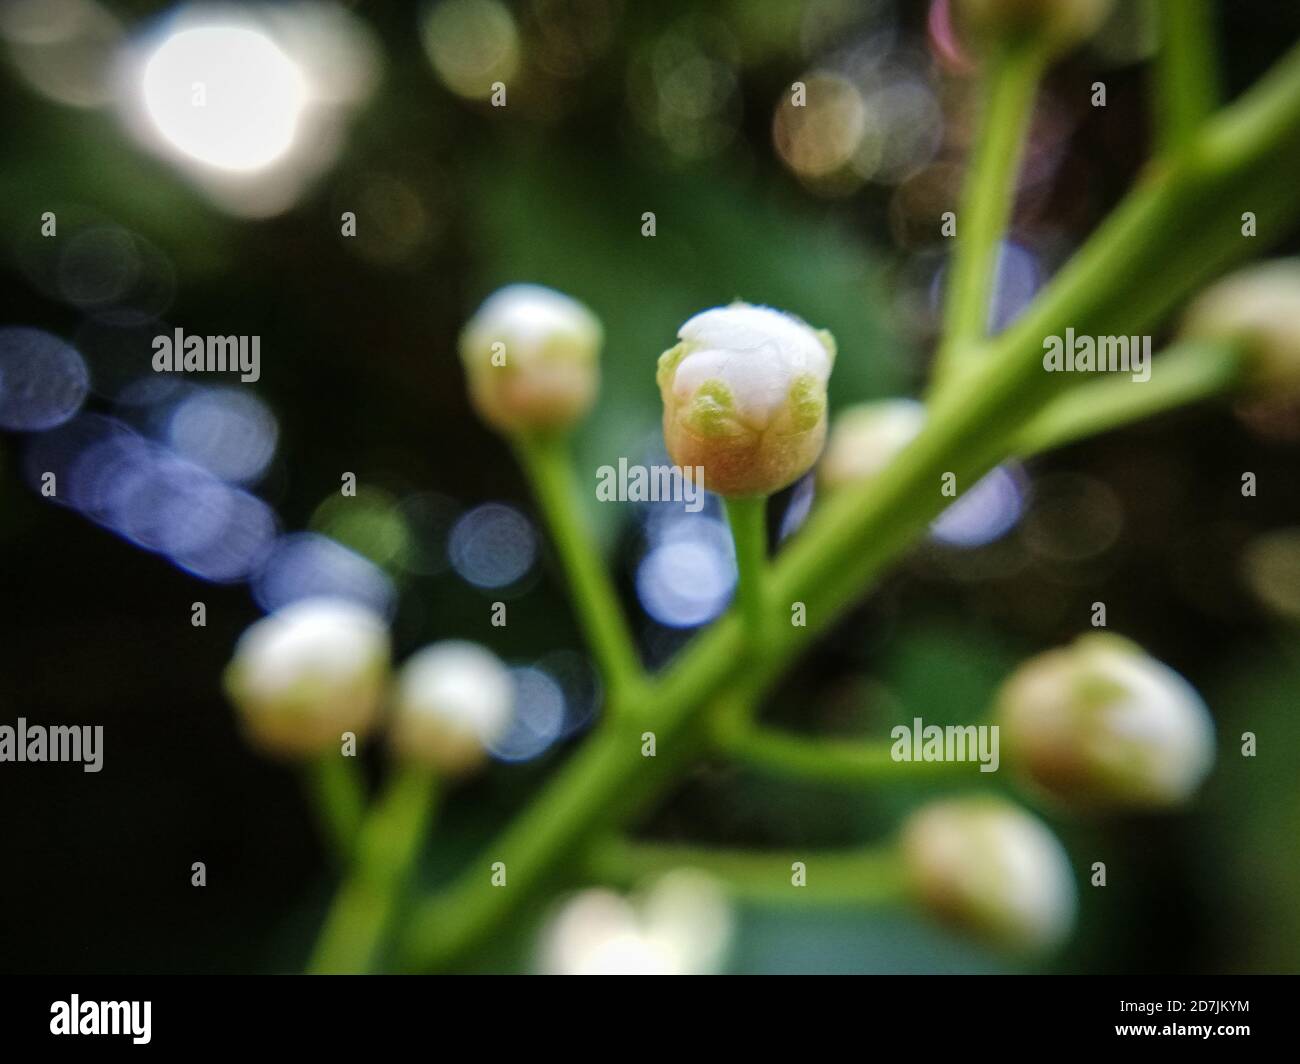 germogli bianchi poco morbidi su una pianta dell'albero, macrofotografia Foto Stock